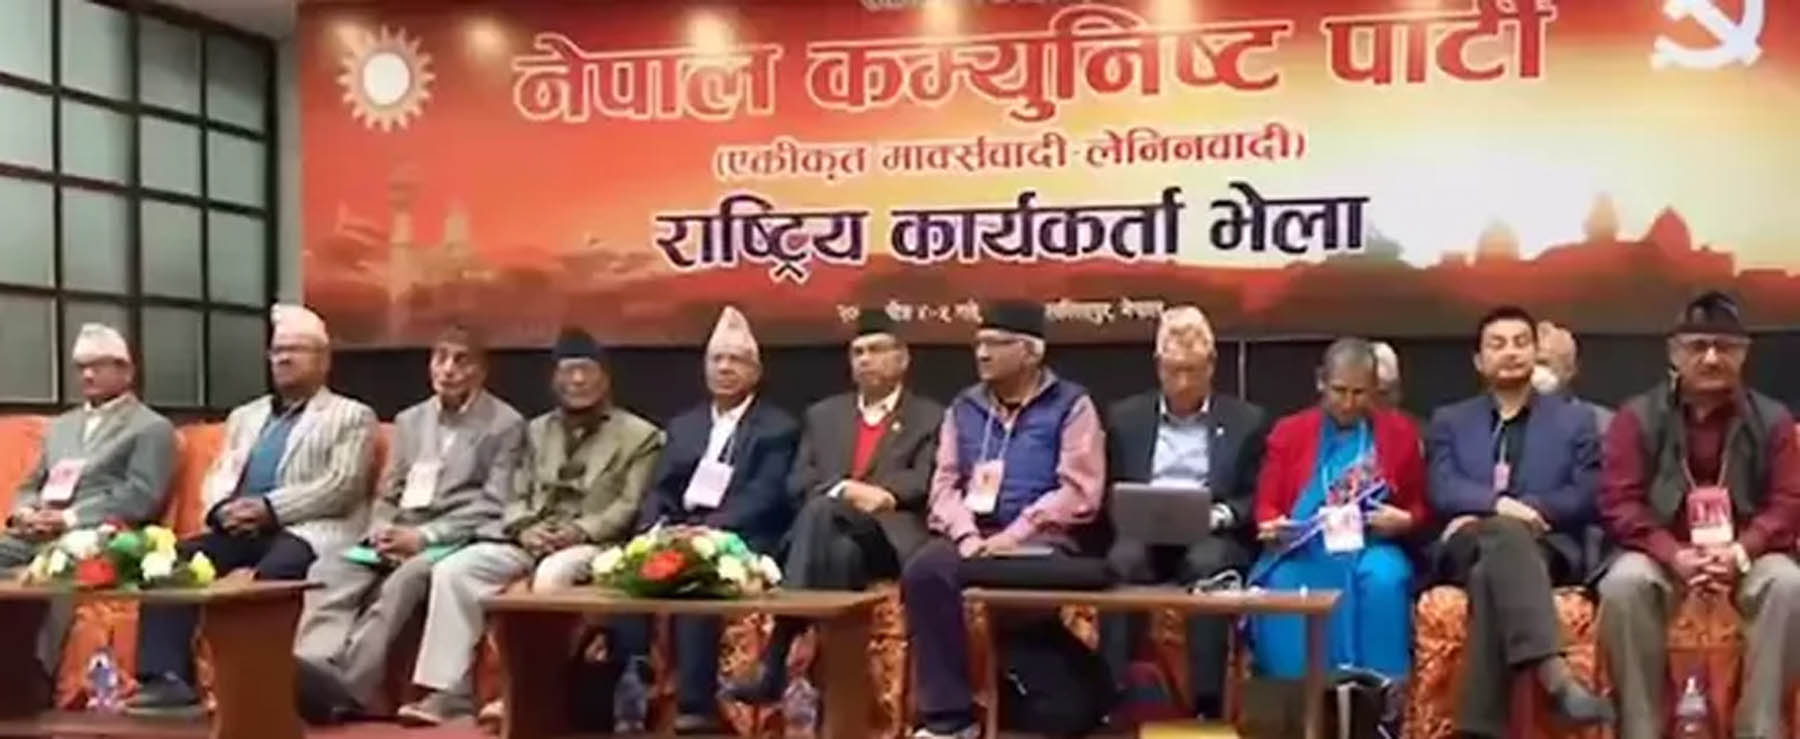 एमालेको नेपाल-खनाल पक्षको राष्ट्रियको कार्यकर्ता भेला शुरू, झलनाथले गरे अध्यक्षता